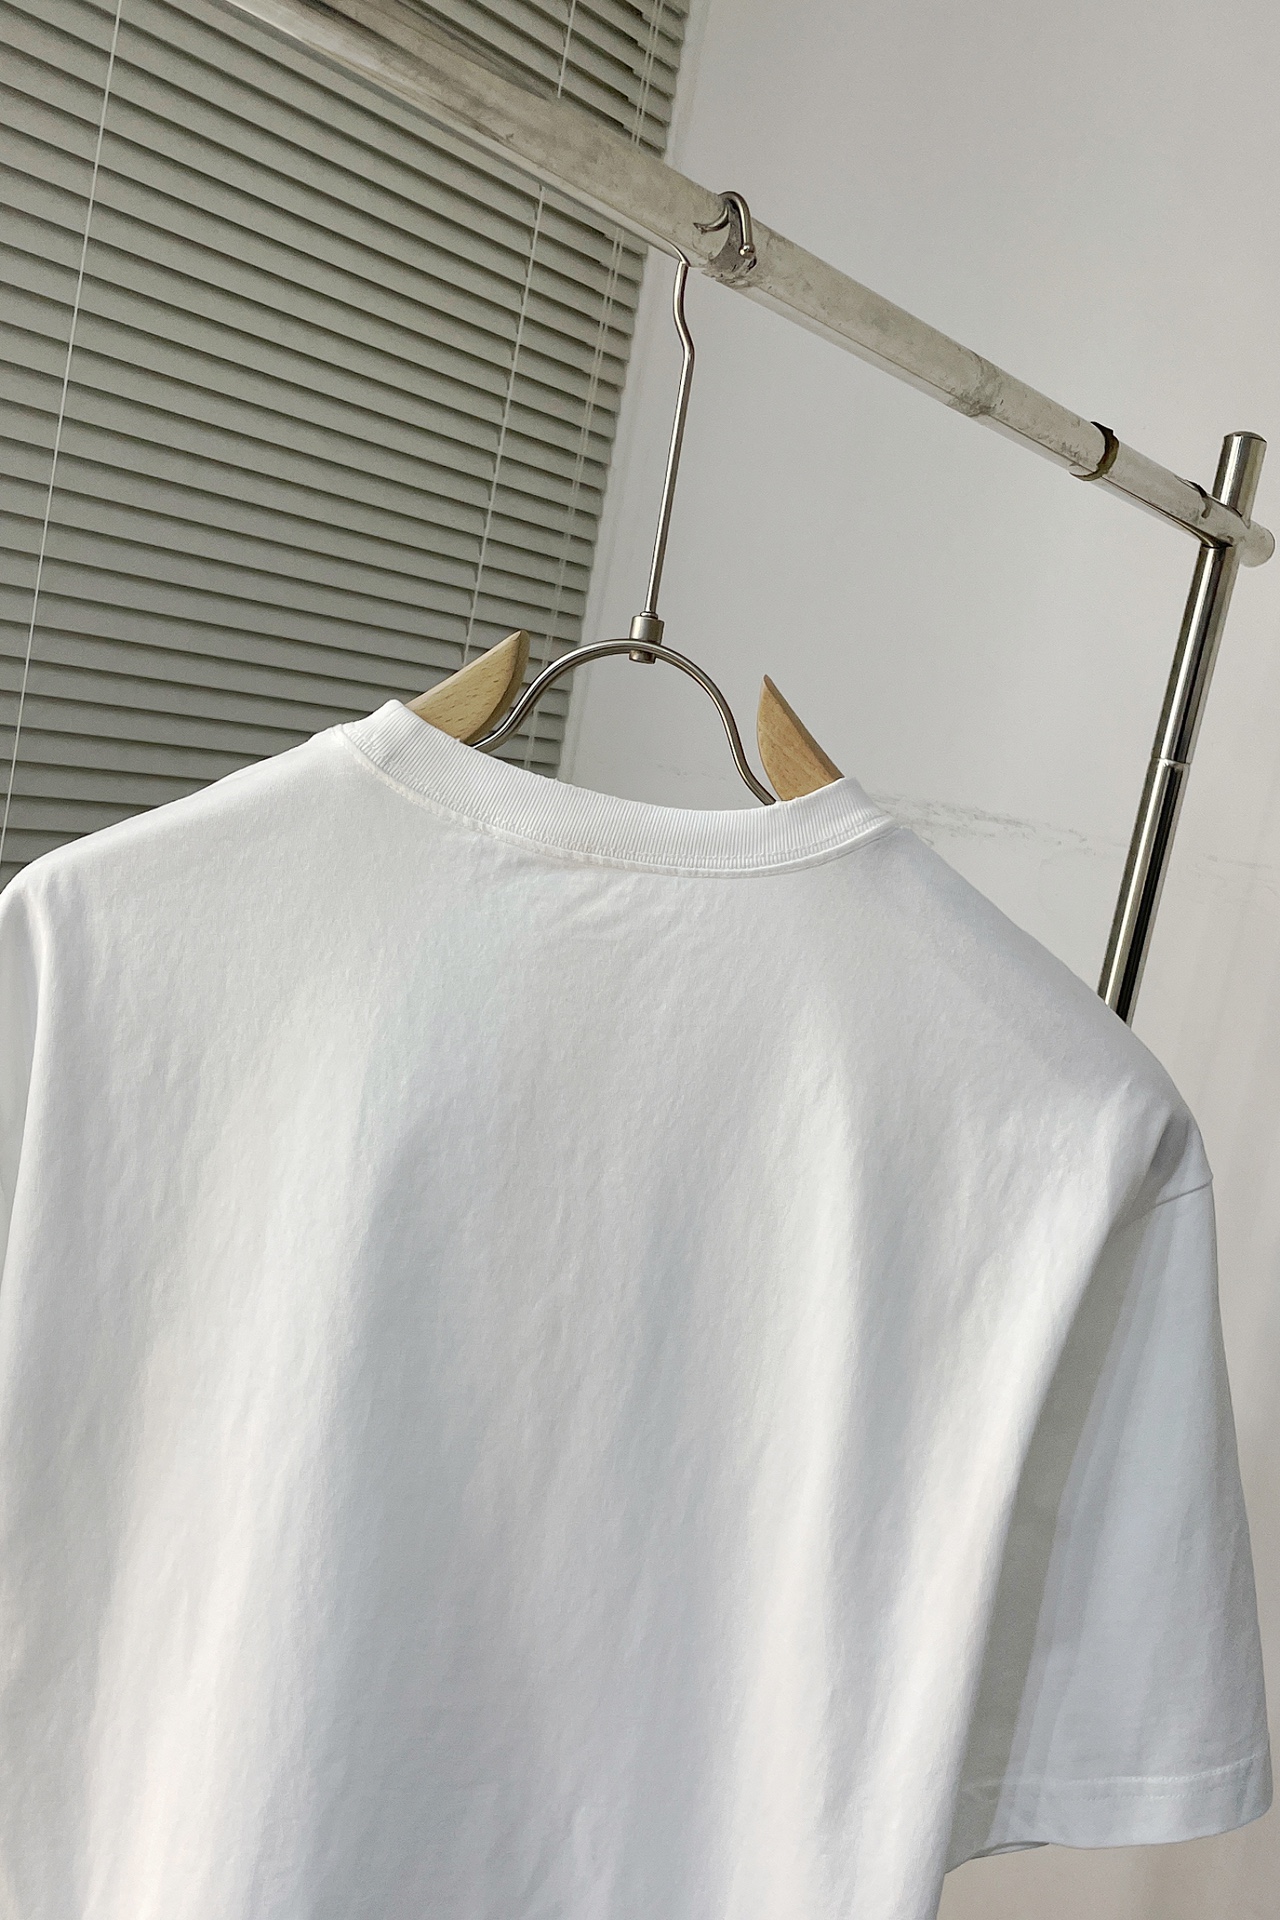 クロムハーツtシャツ 公式偽物 トップス 純綿 半袖 高級感に溢れ ゆったり 柔らかい ホワイト_7